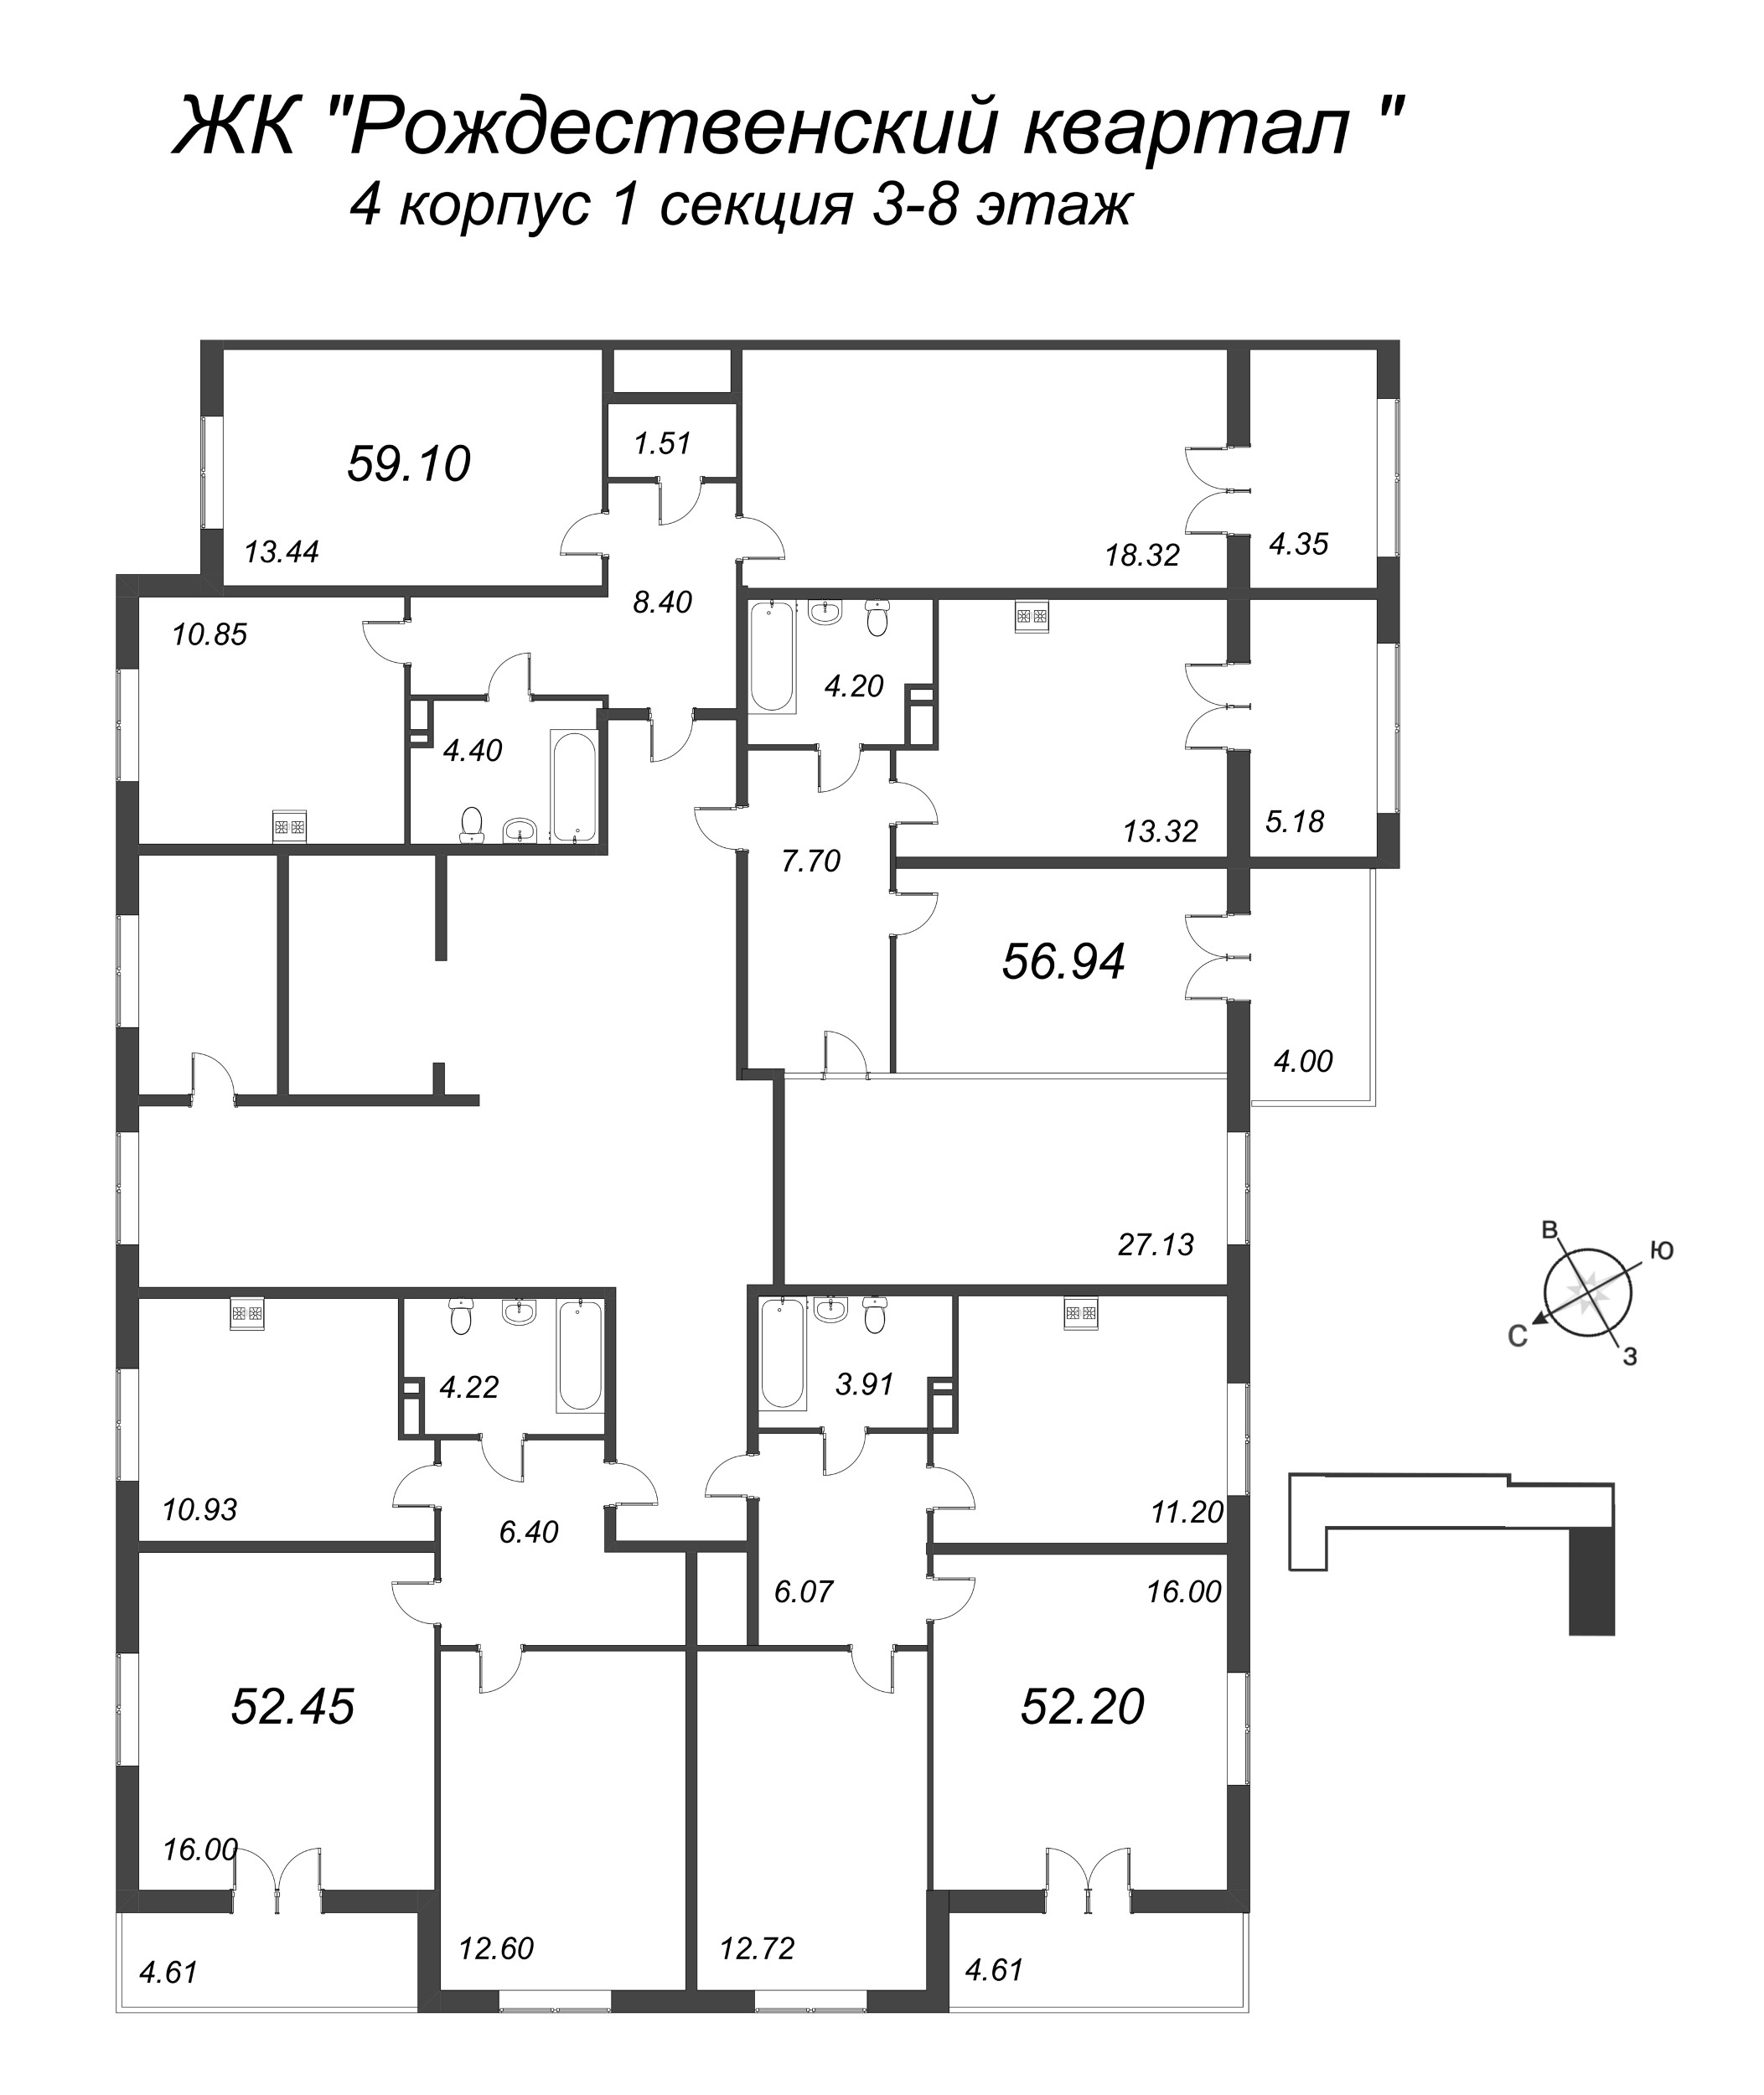 2-комнатная квартира, 52.2 м² в ЖК "Рождественский квартал" - планировка этажа